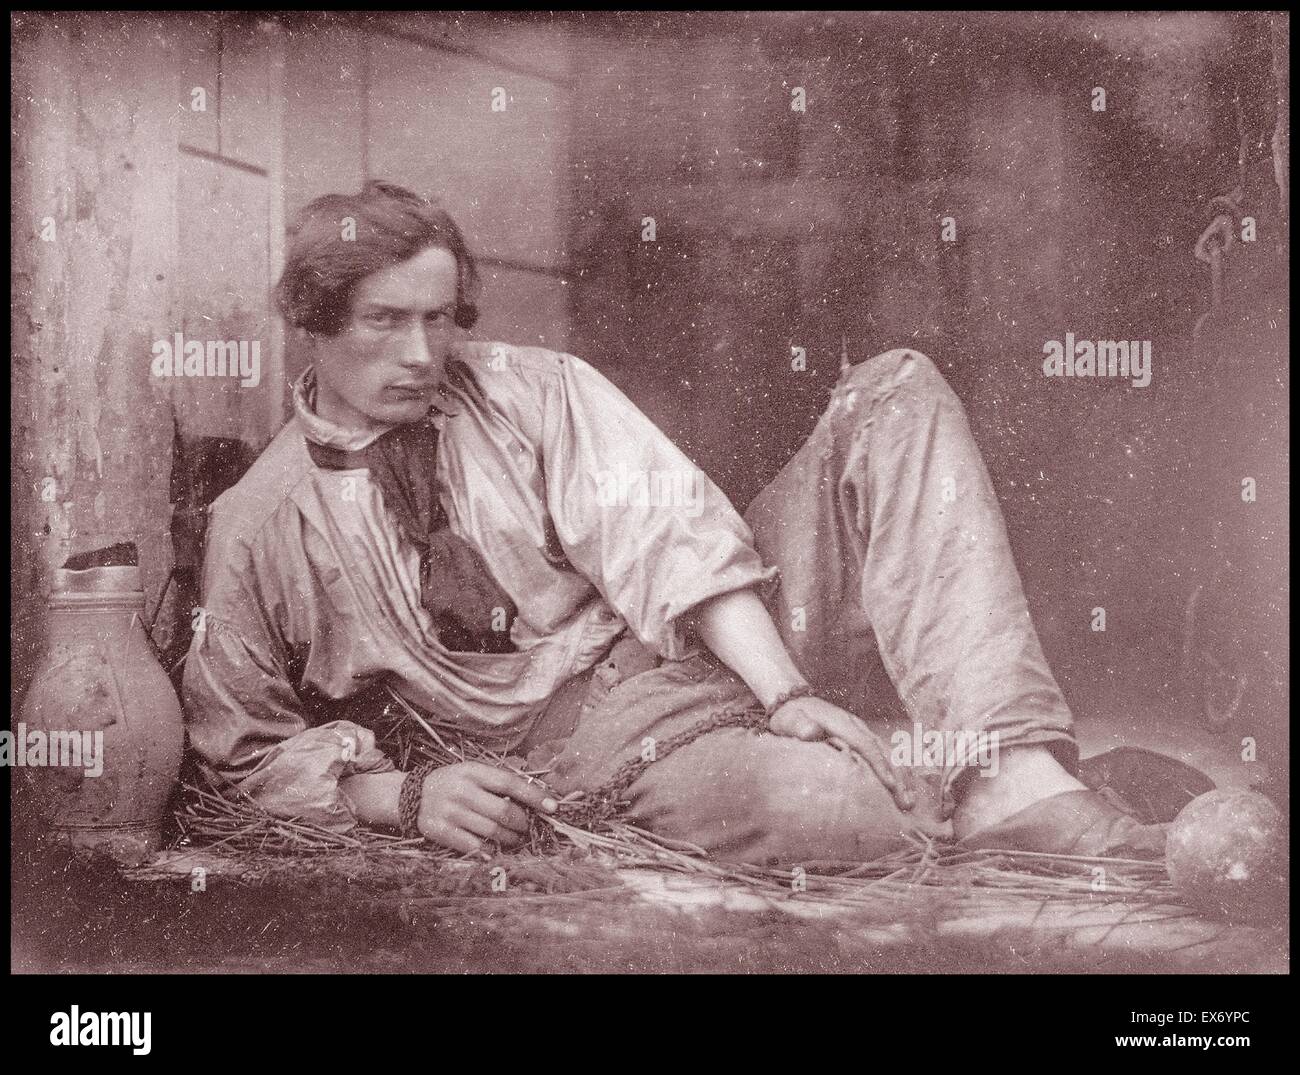 Musee D d'Orsay, Parigi. Louis Dodier come un prigioniero, 1847. Fotografia datata 1847 da Louis Adolphe de Hubert molare. Foto Stock